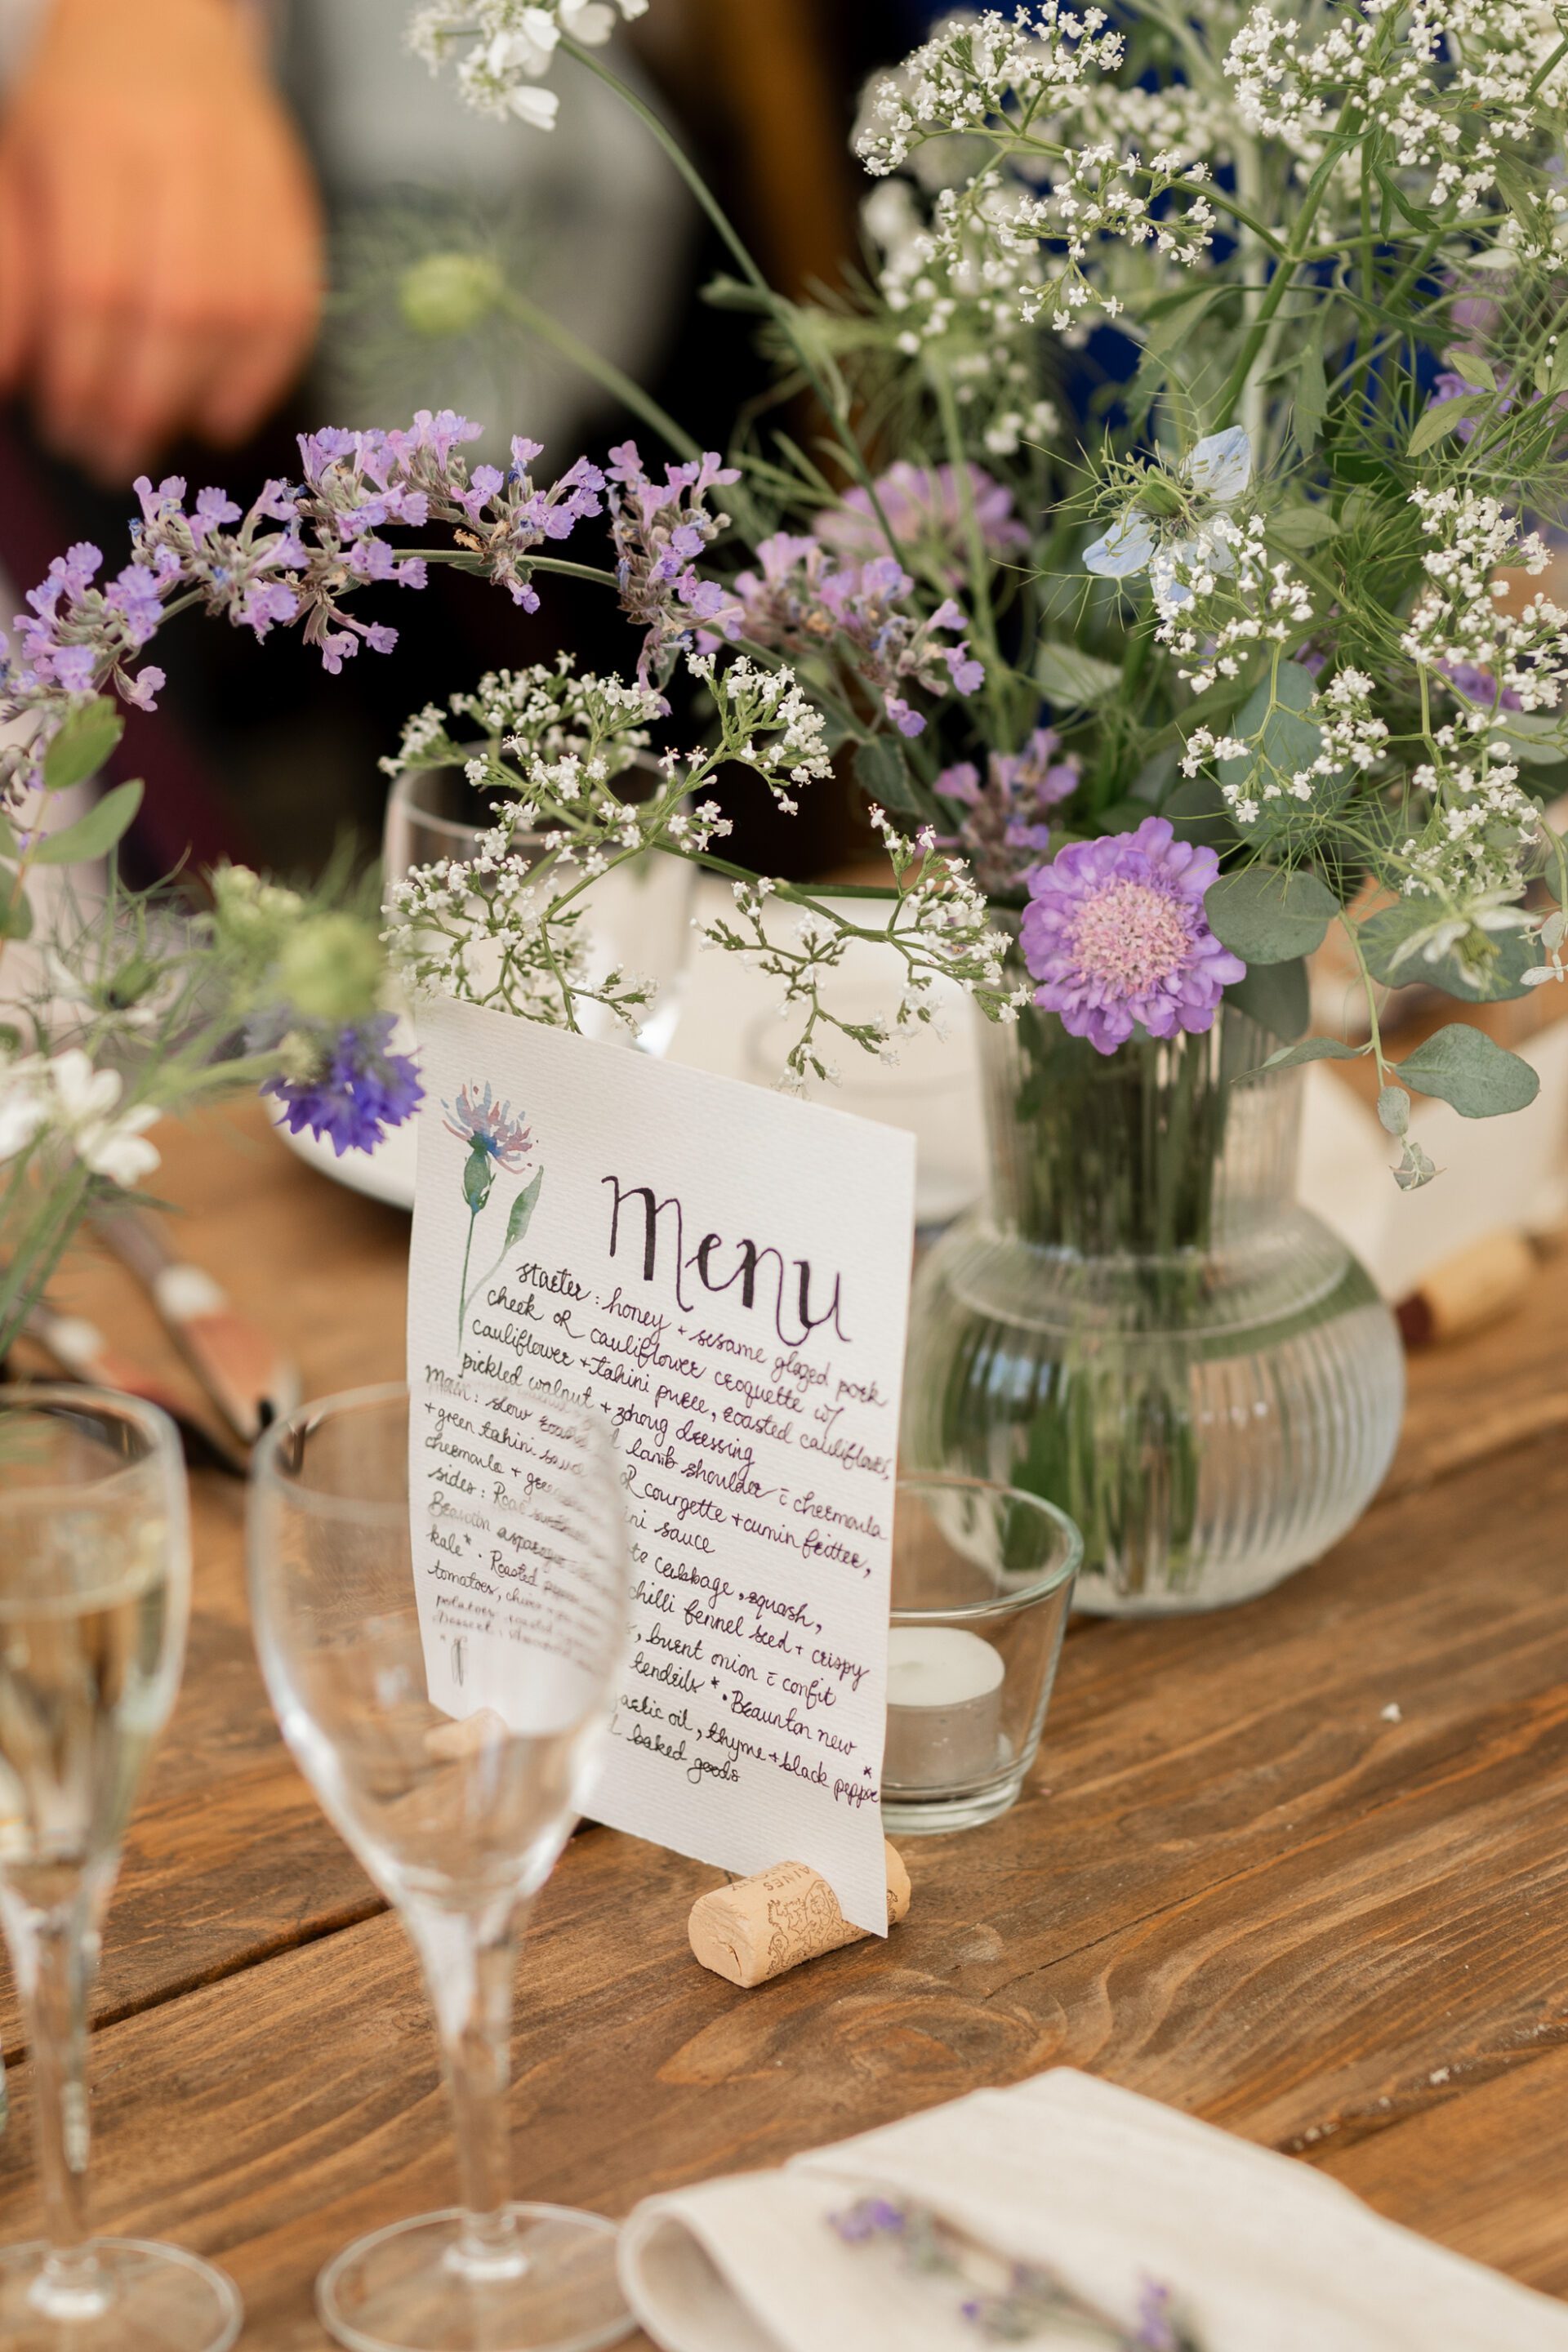 A beautiful handwritten menu adorns the table at a Devon marquee wedding